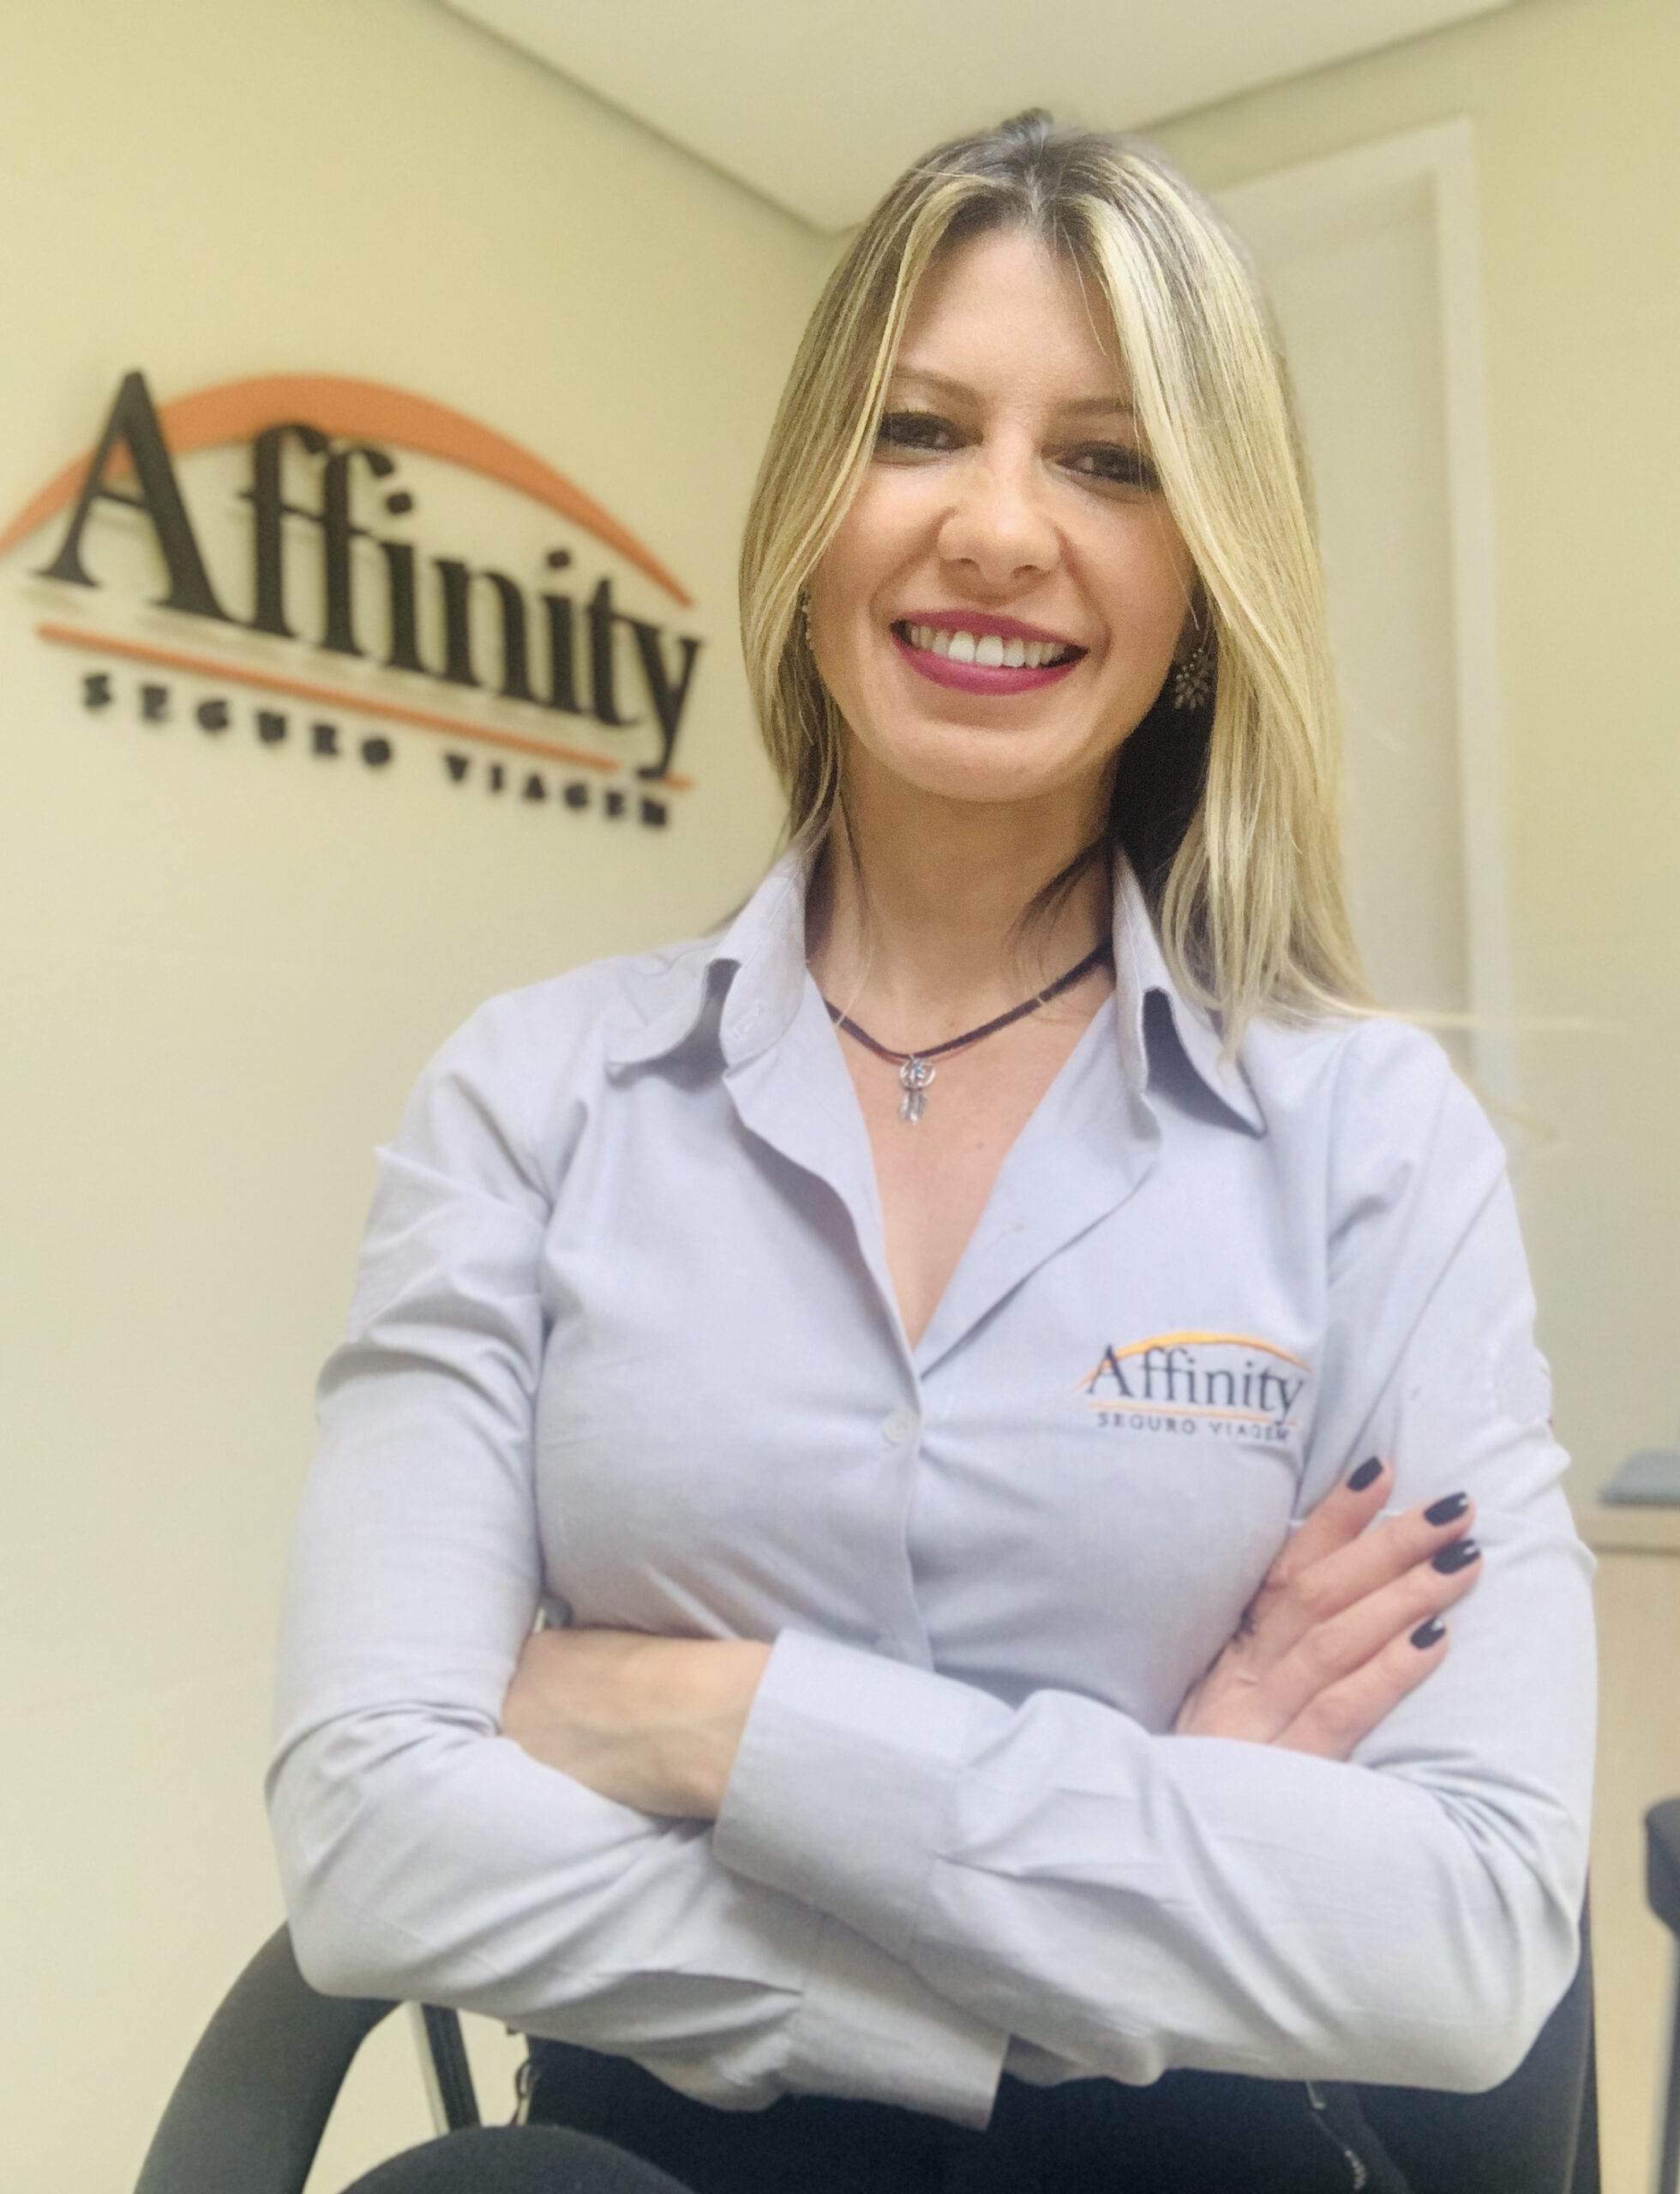 Affinity capacita equipe de vendas em parceria com a AXA Seguros